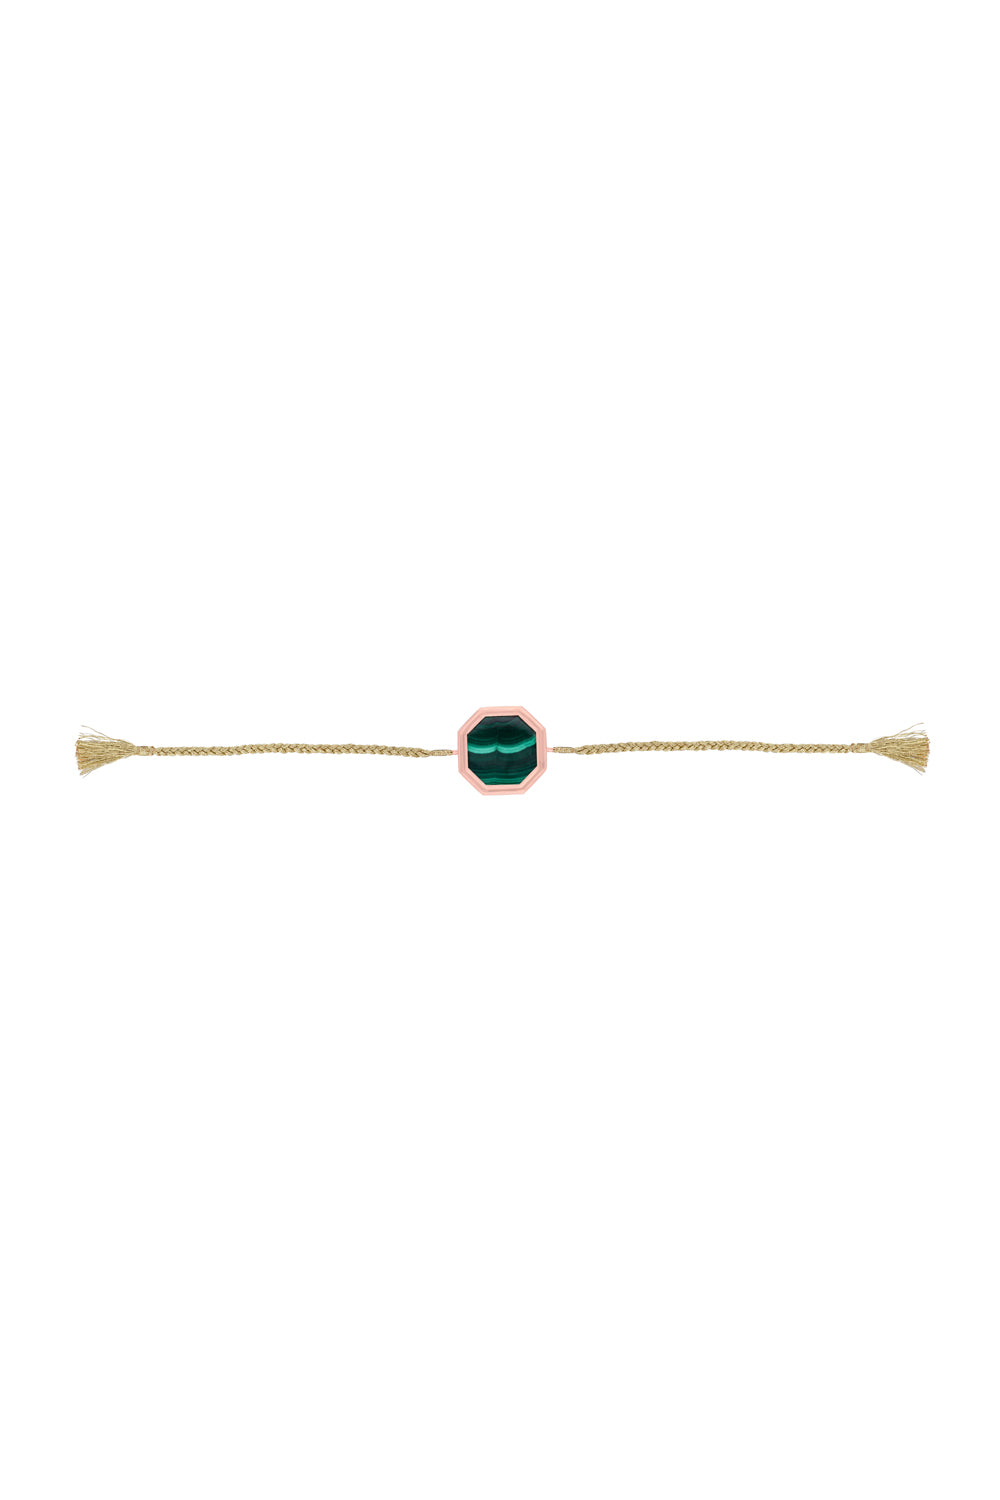 Octagon Malachite Cord 14KT Gold Bracelet